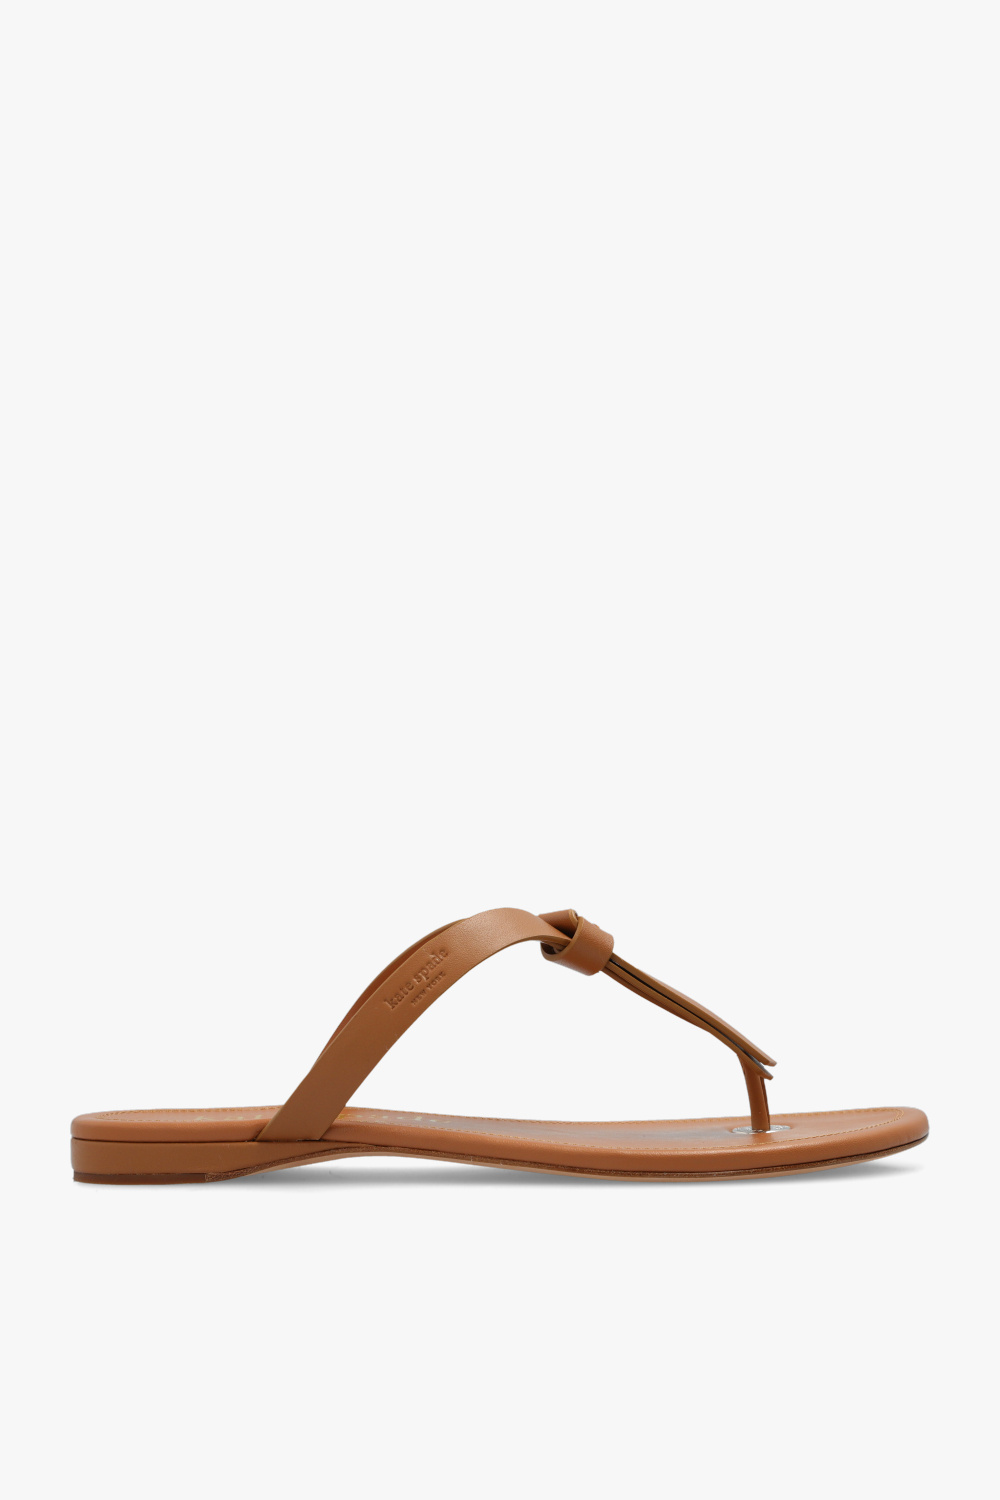 Leather Flip Flop Sandals Tan